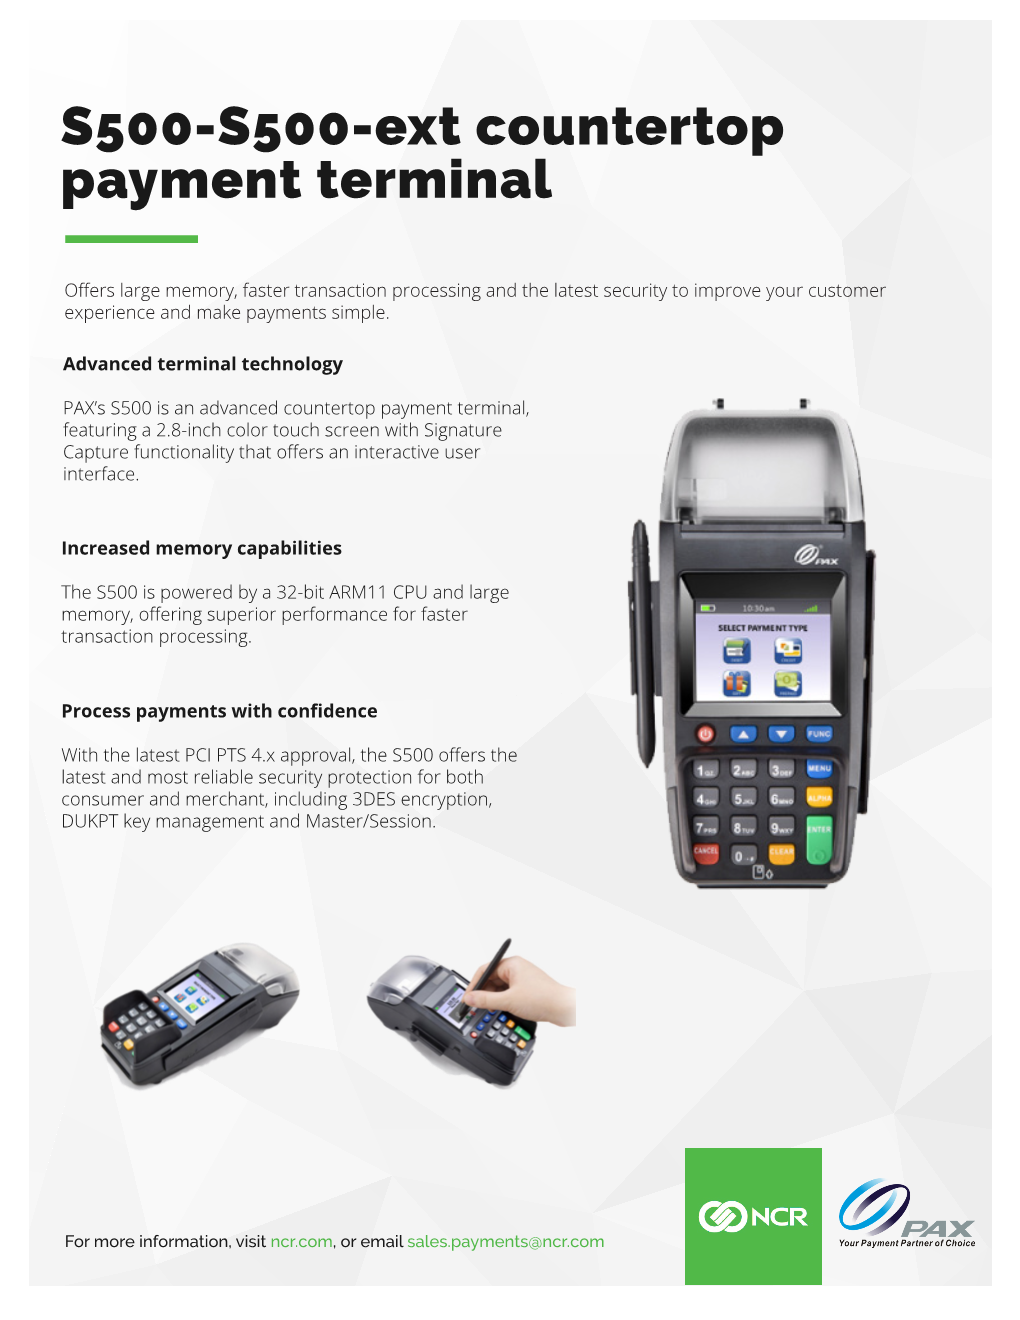 S500-S500-Ext Countertop Payment Terminal